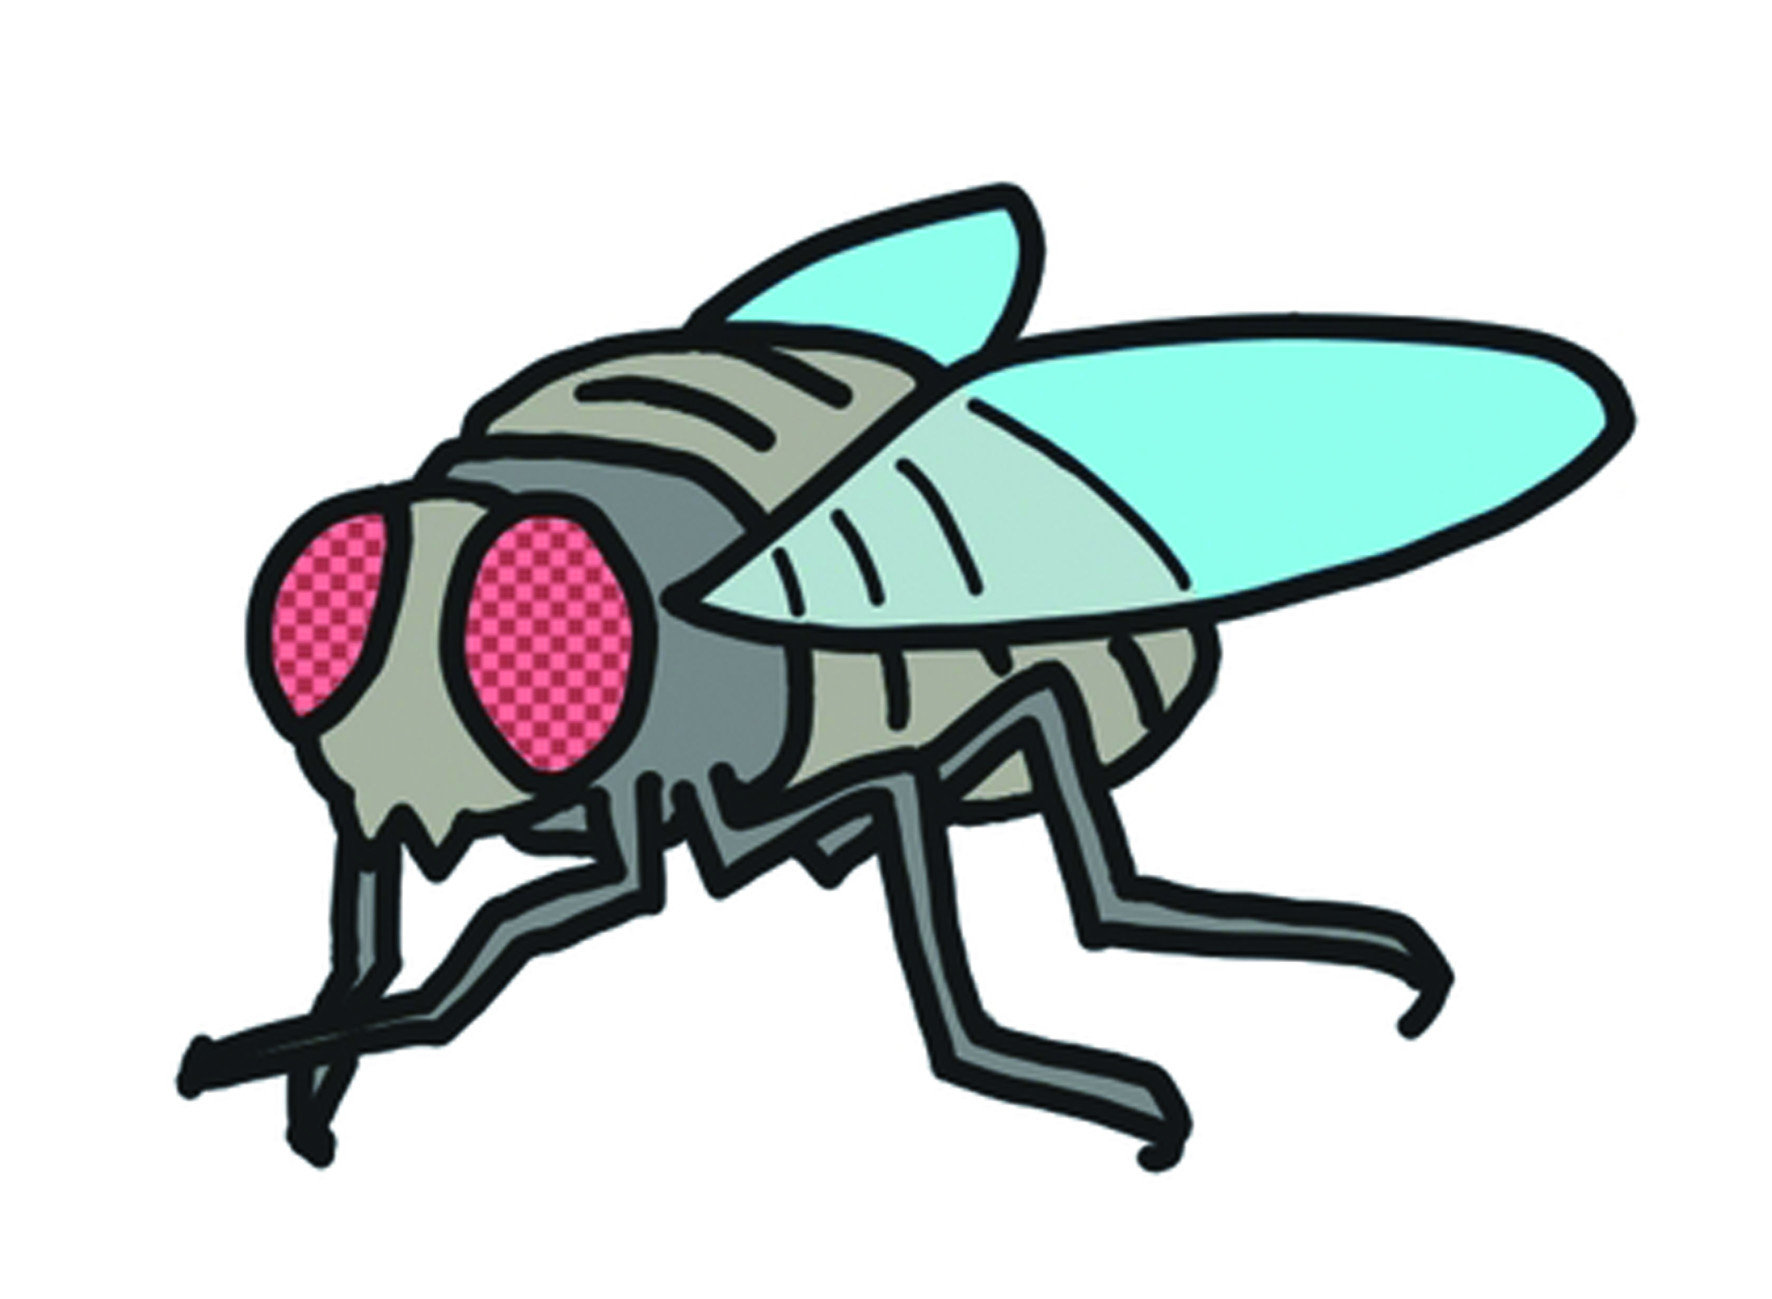 肉蠅因著有可能寄生生物體的特性，很有可能出現在衛生不良的地區，
依附在受傷的人們身上。即便在醫學上會利用肉蠅來處理傷者潰爛的傷口，
但在非專業治療的狀況下，肉蠅可能會藉此引發更多疾病。
特別是行動不便的傷者，一不小心可能就遭到肉蠅的侵襲。